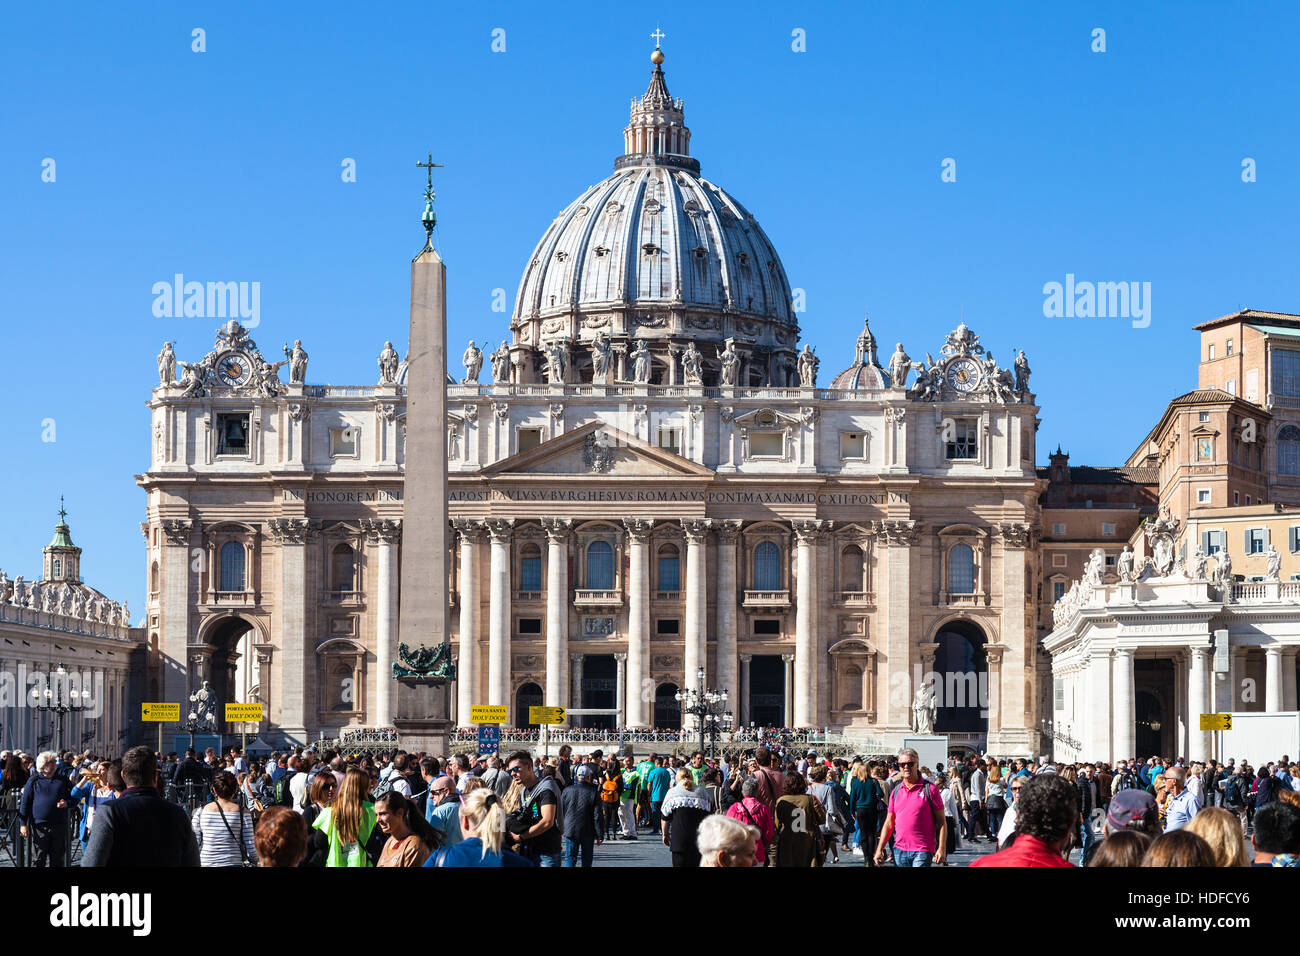 Roma, Italia - 31 ottobre 2016: turistica davanti alla Basilica di San Pietro. La Basilica è la cattedrale cattolica, la centrale e più importante edificio di Va Foto Stock